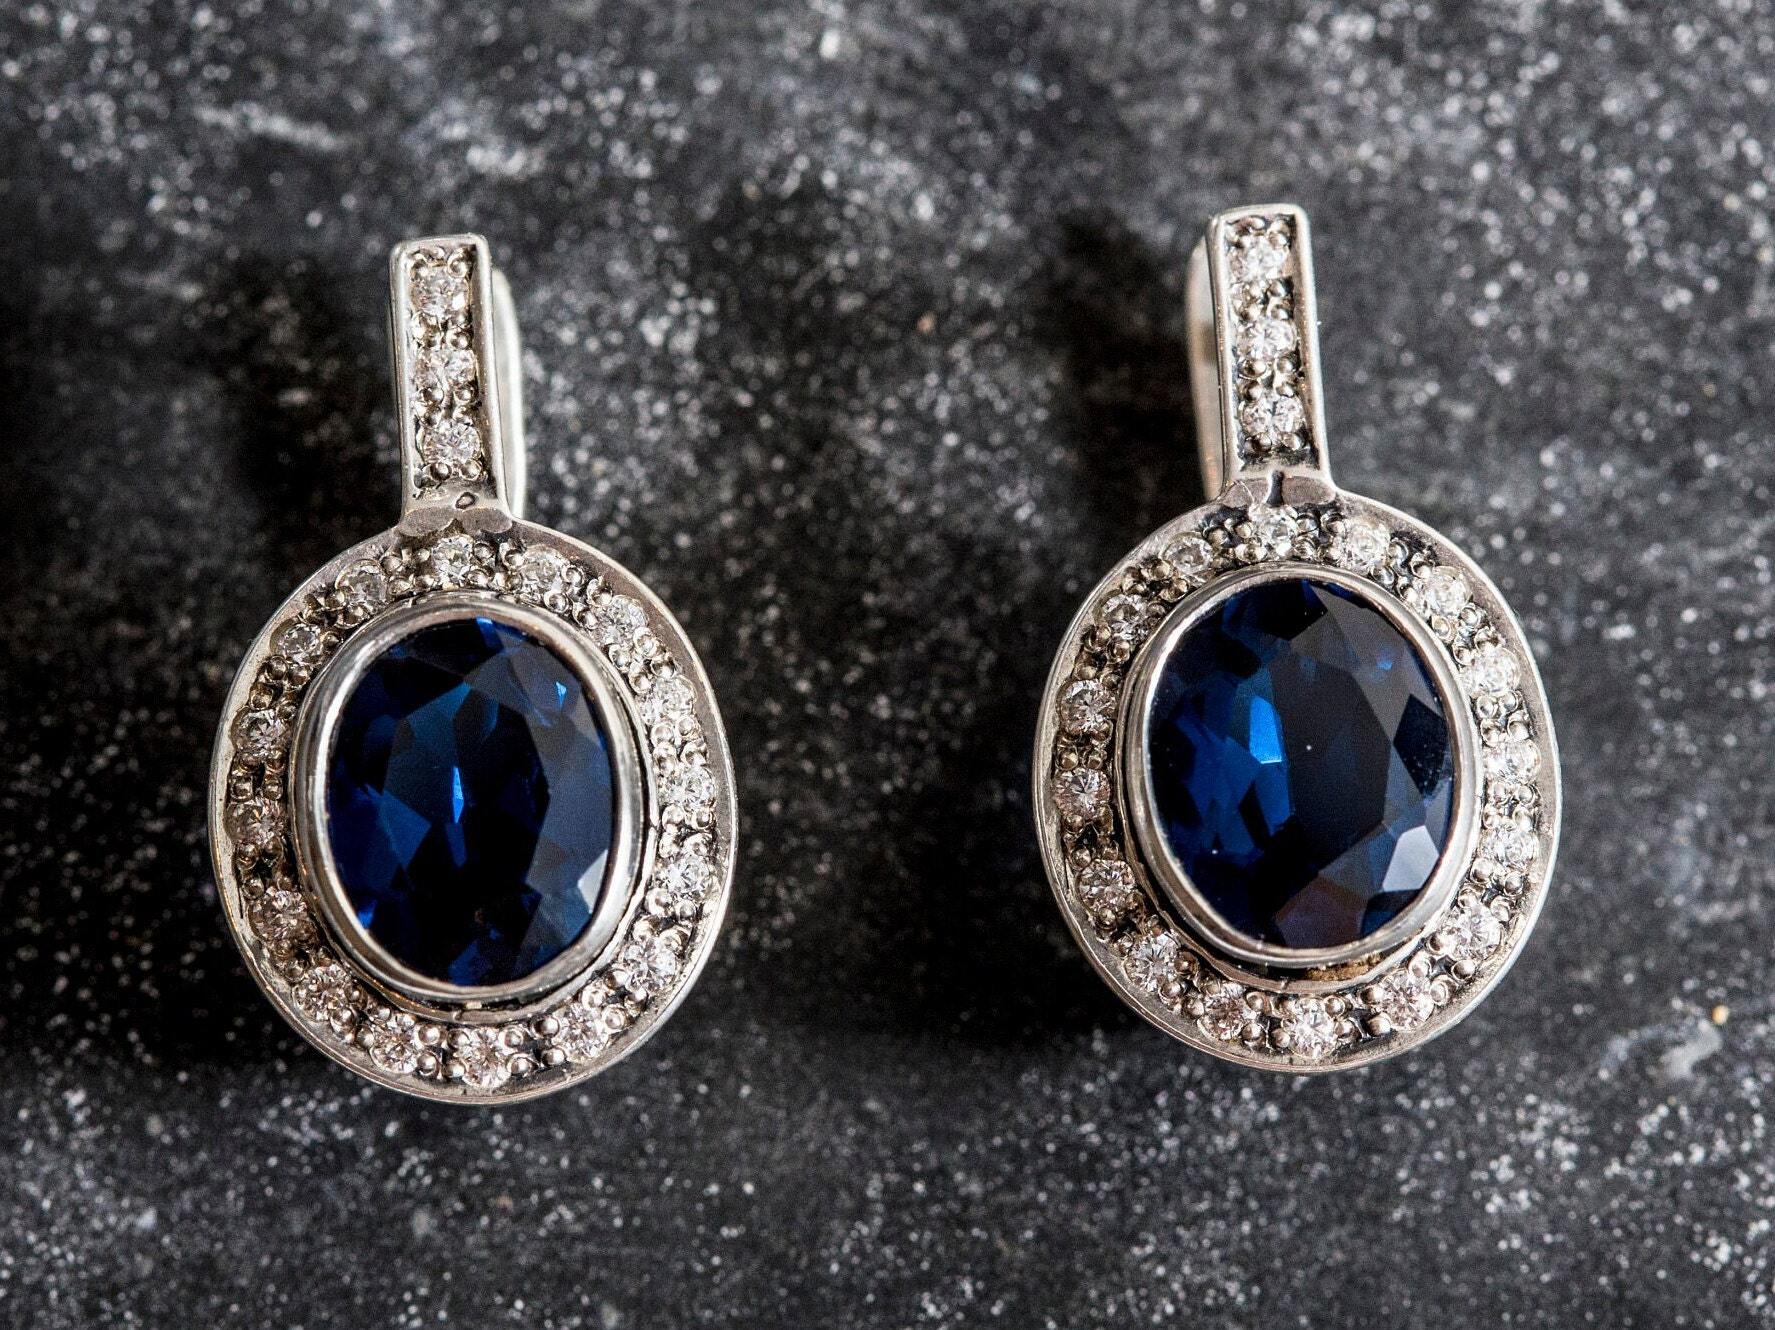 Blue Sapphire Earrings, Sapphire Earrings, Created Sapphire, Royal Blue Earrings, Something Blue Earrings, Vintage Earrings, Silver Earrings